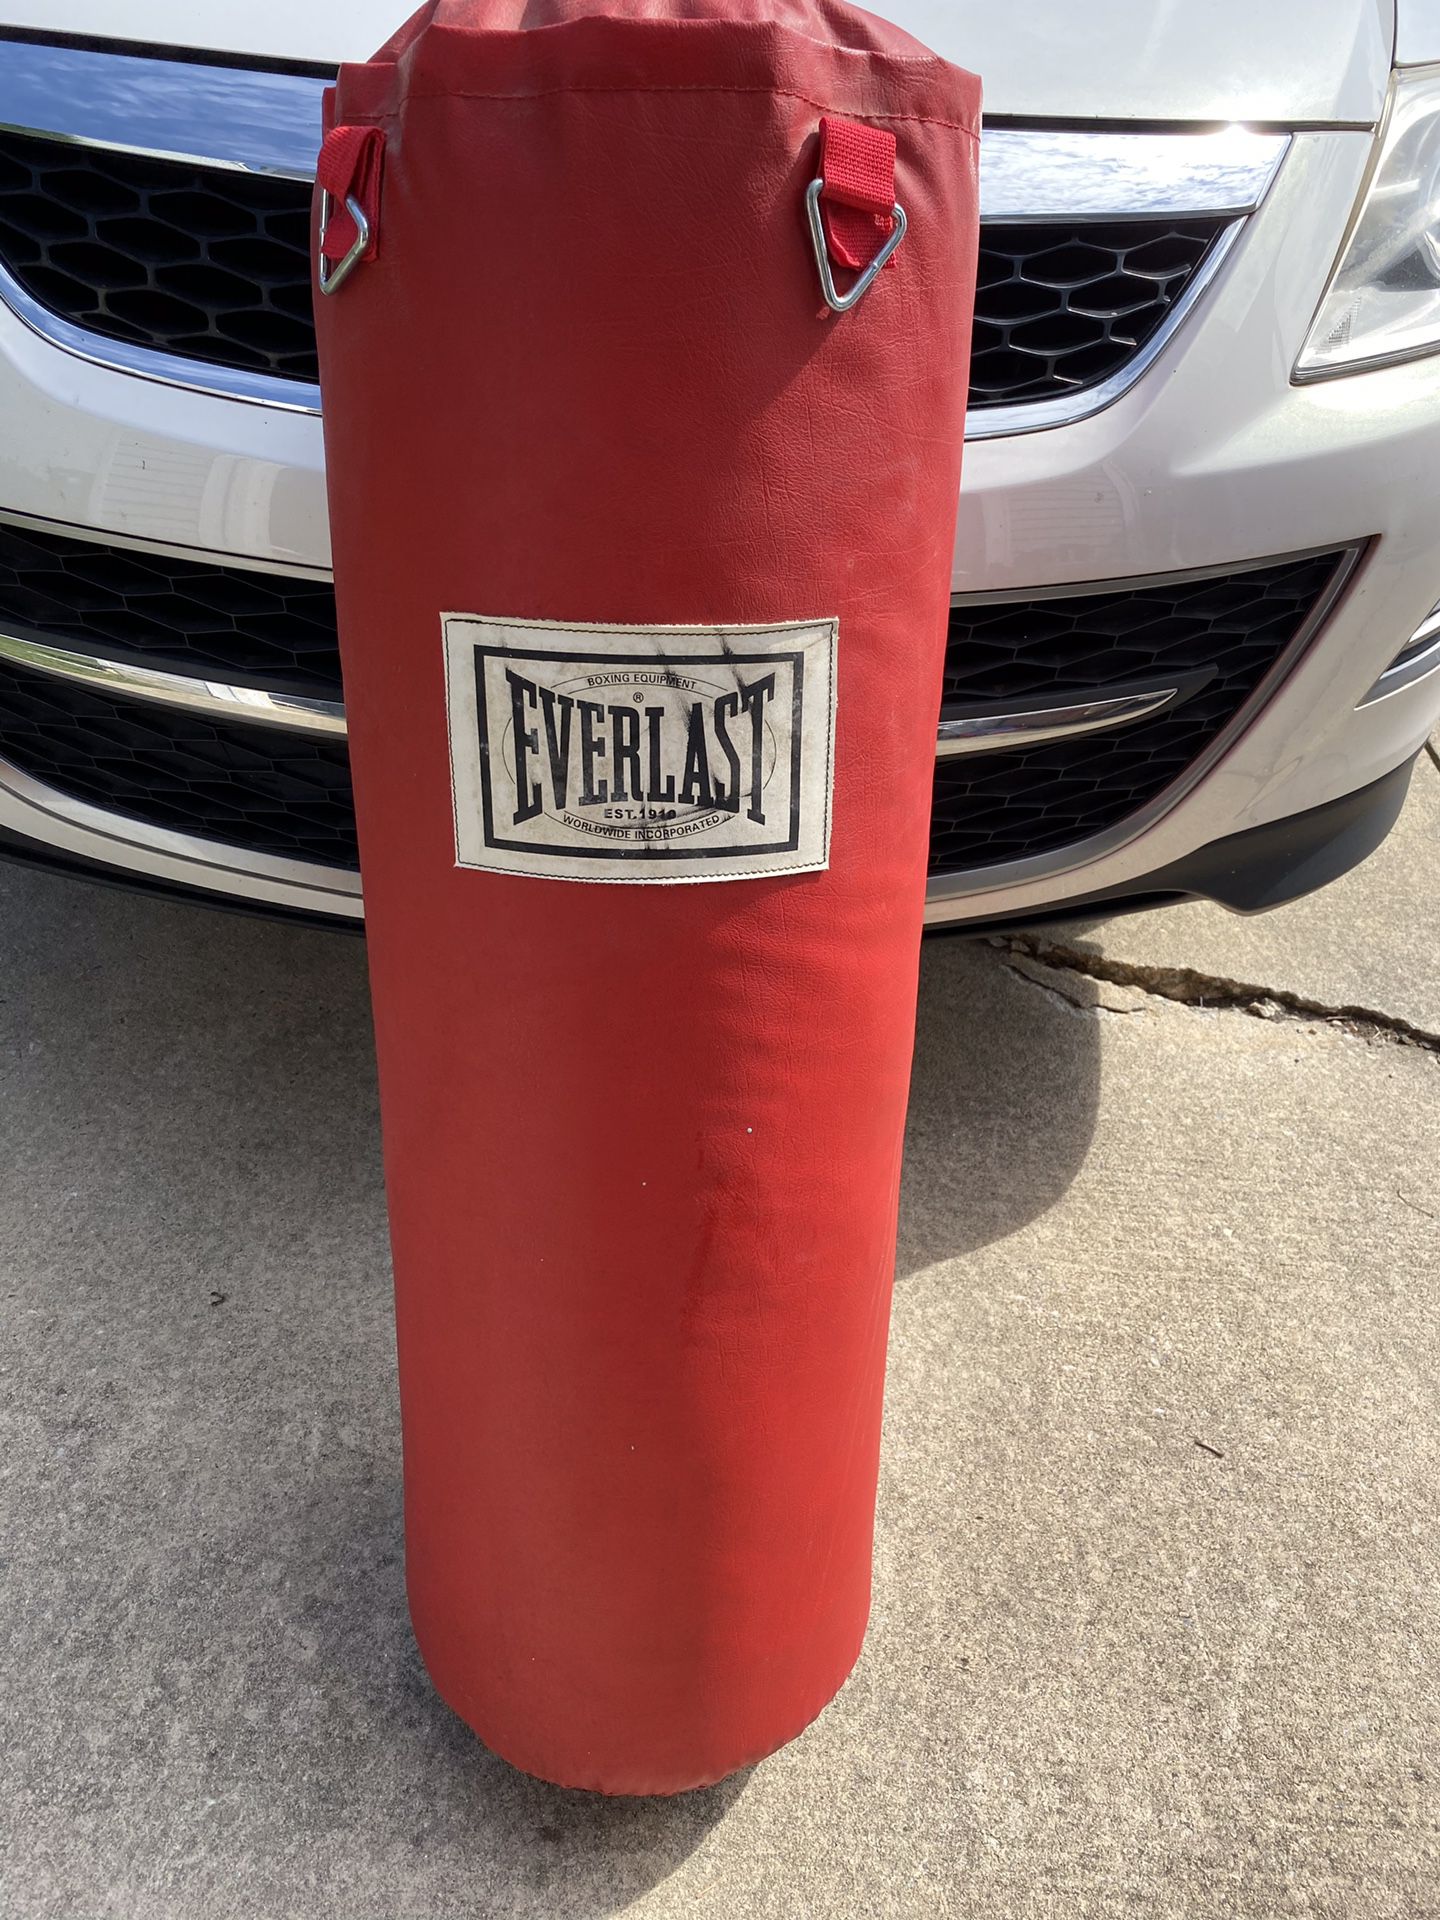 Everlast Full Size Punching Bag